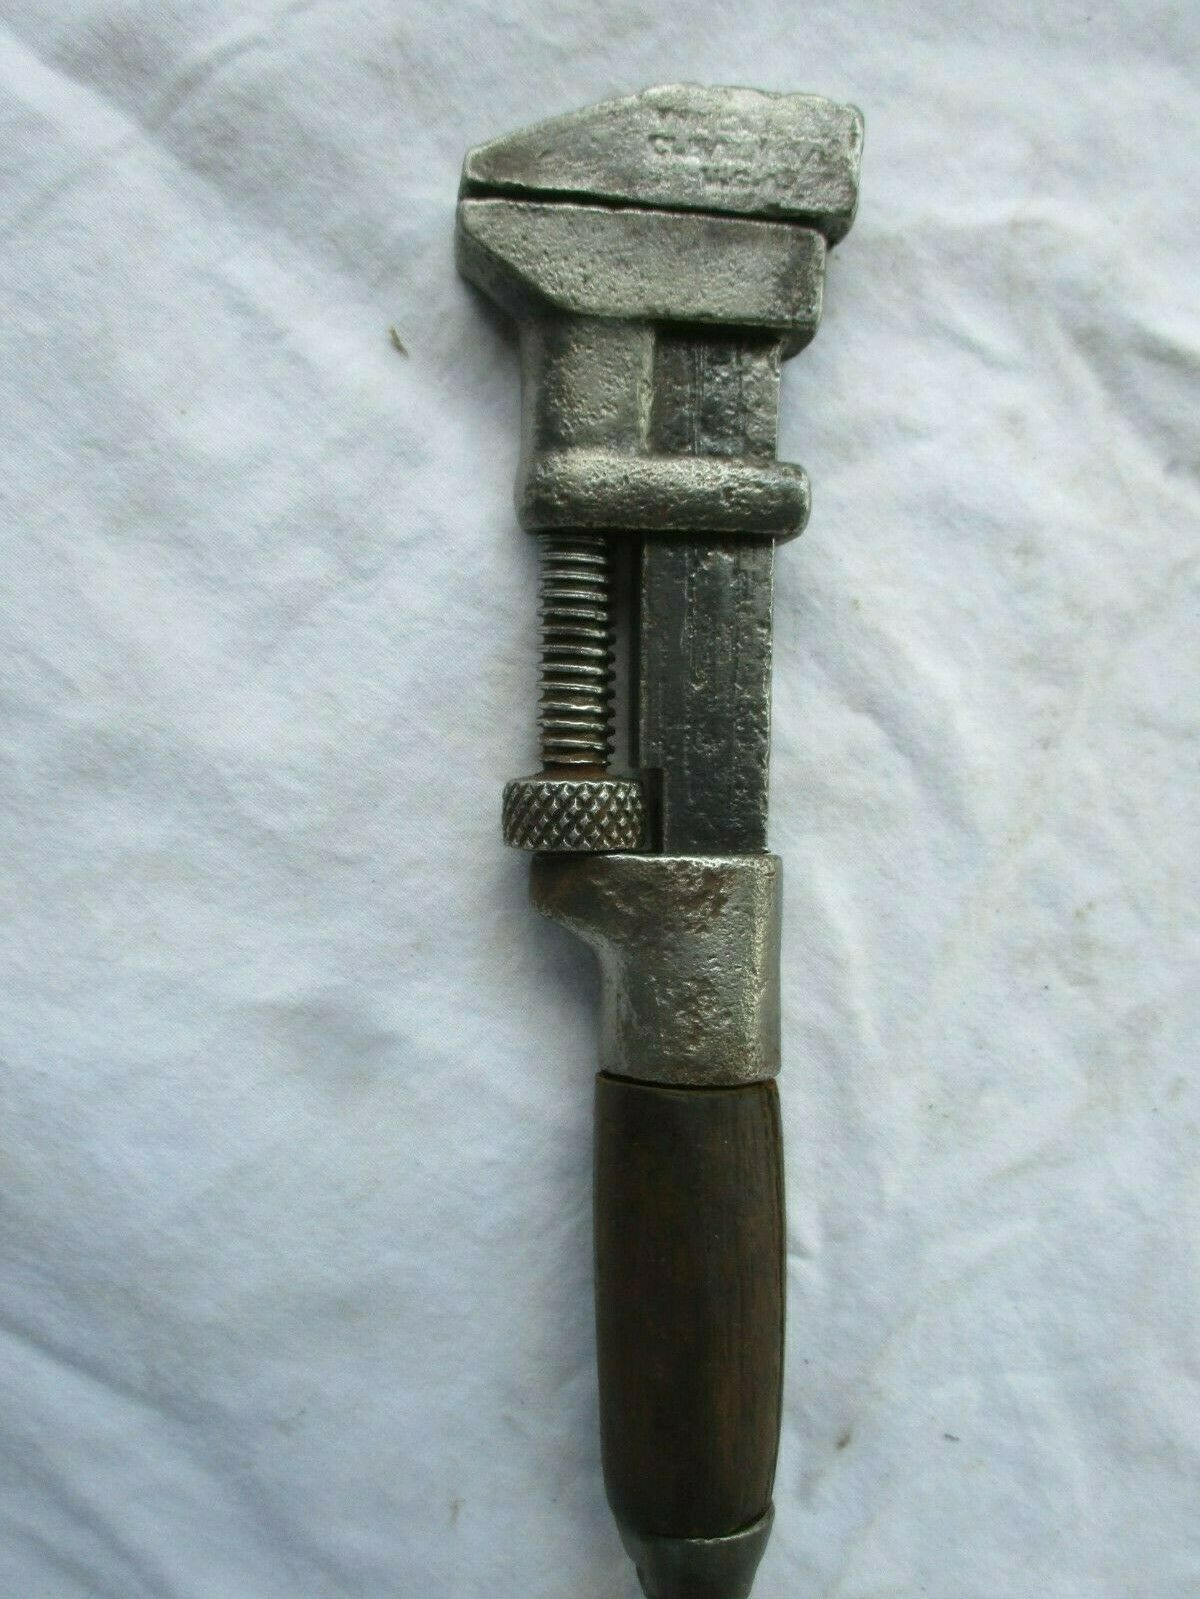 Vntg Monkey Wrench 7" Long  Vintage Monkey Wrench Clevland Ohio Cracked Handle